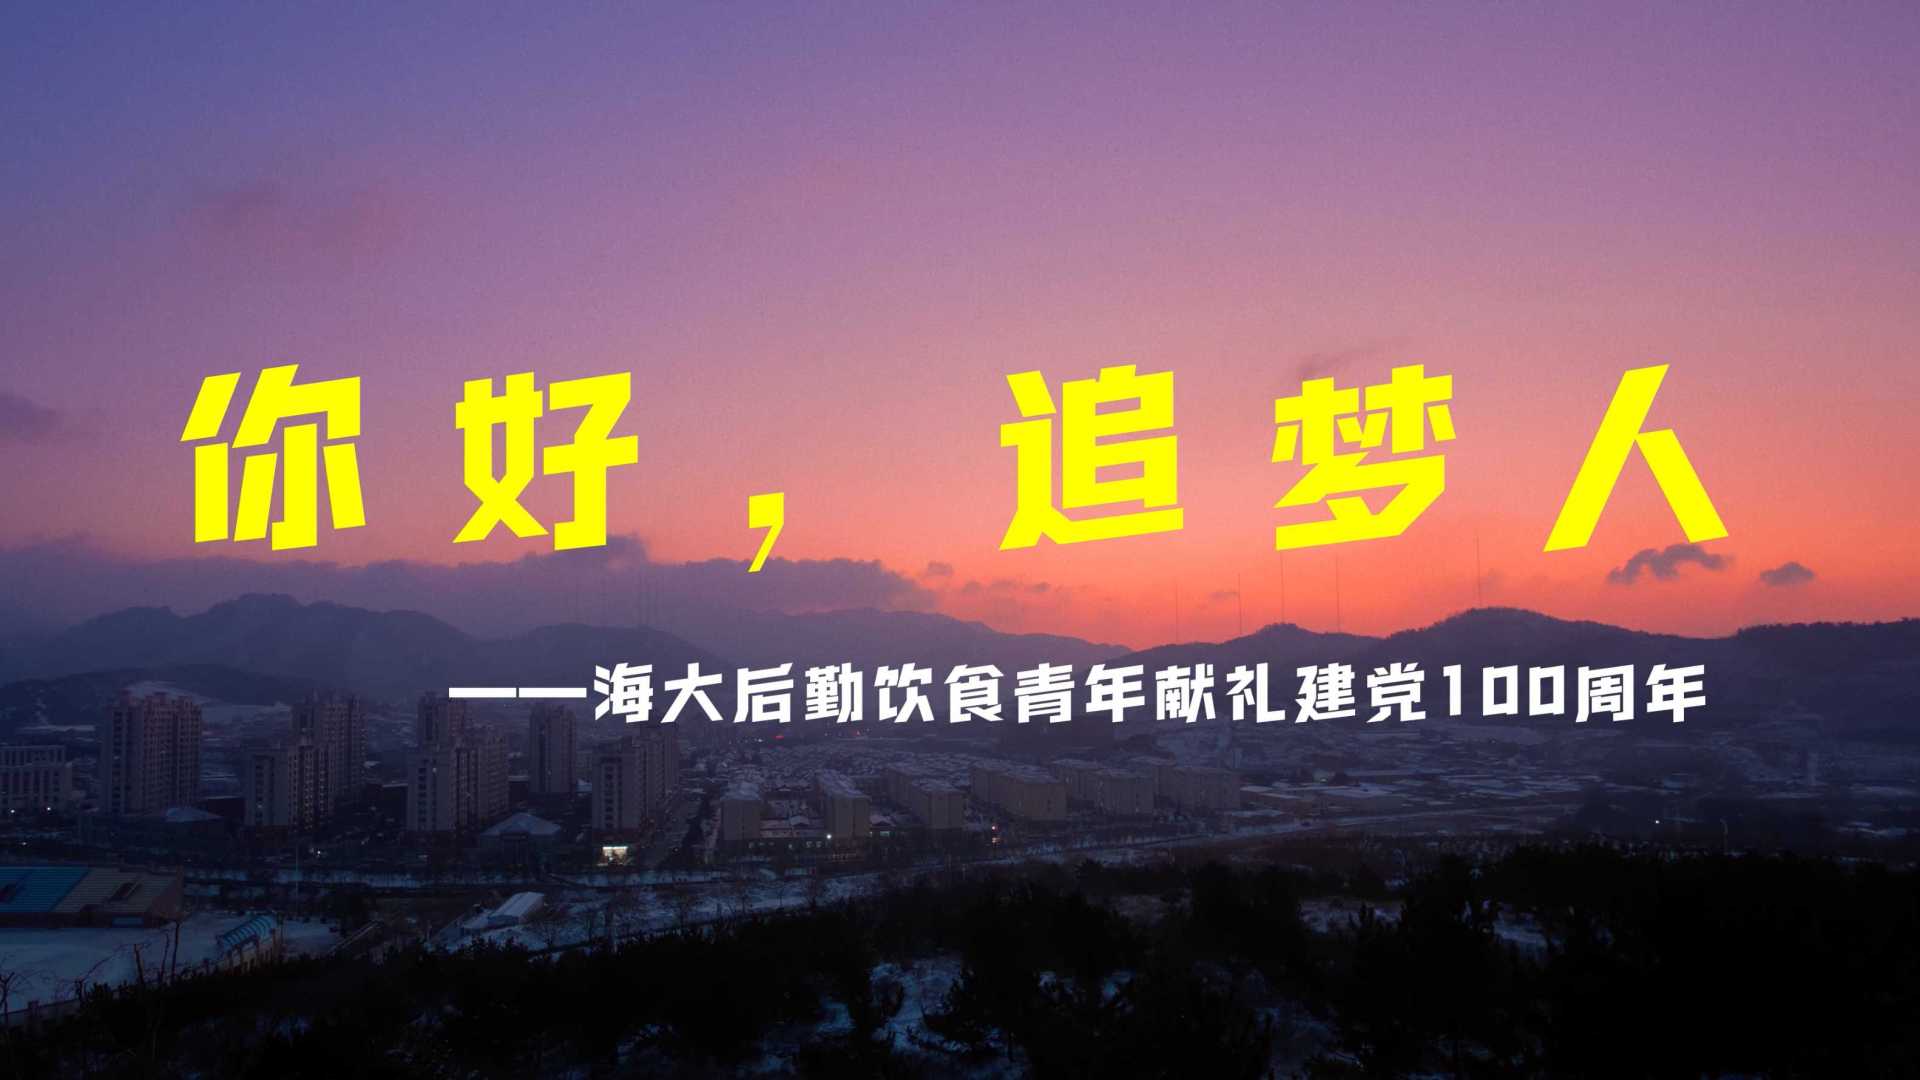 【4K】学生团队为中国海洋大学后勤集团拍摄《你好，追梦人》献礼建党100周年